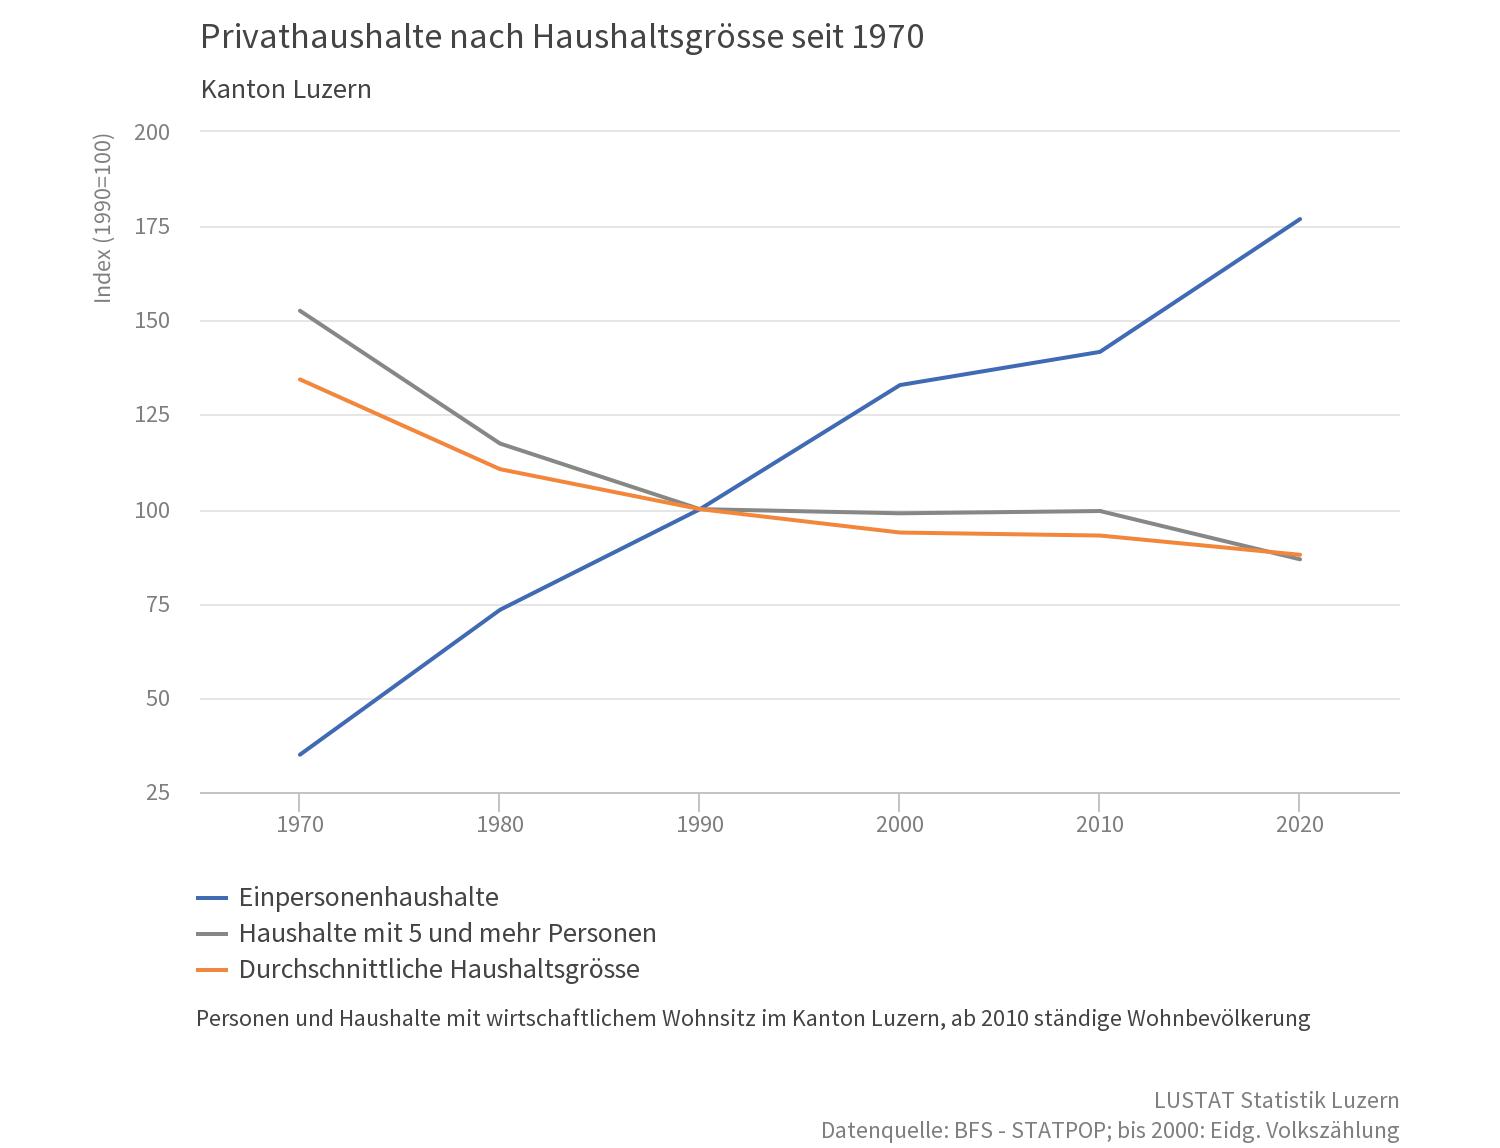 Die Zahl der Einpersonenhaushalte steigt in Luzern seit 2010 deutlich an.